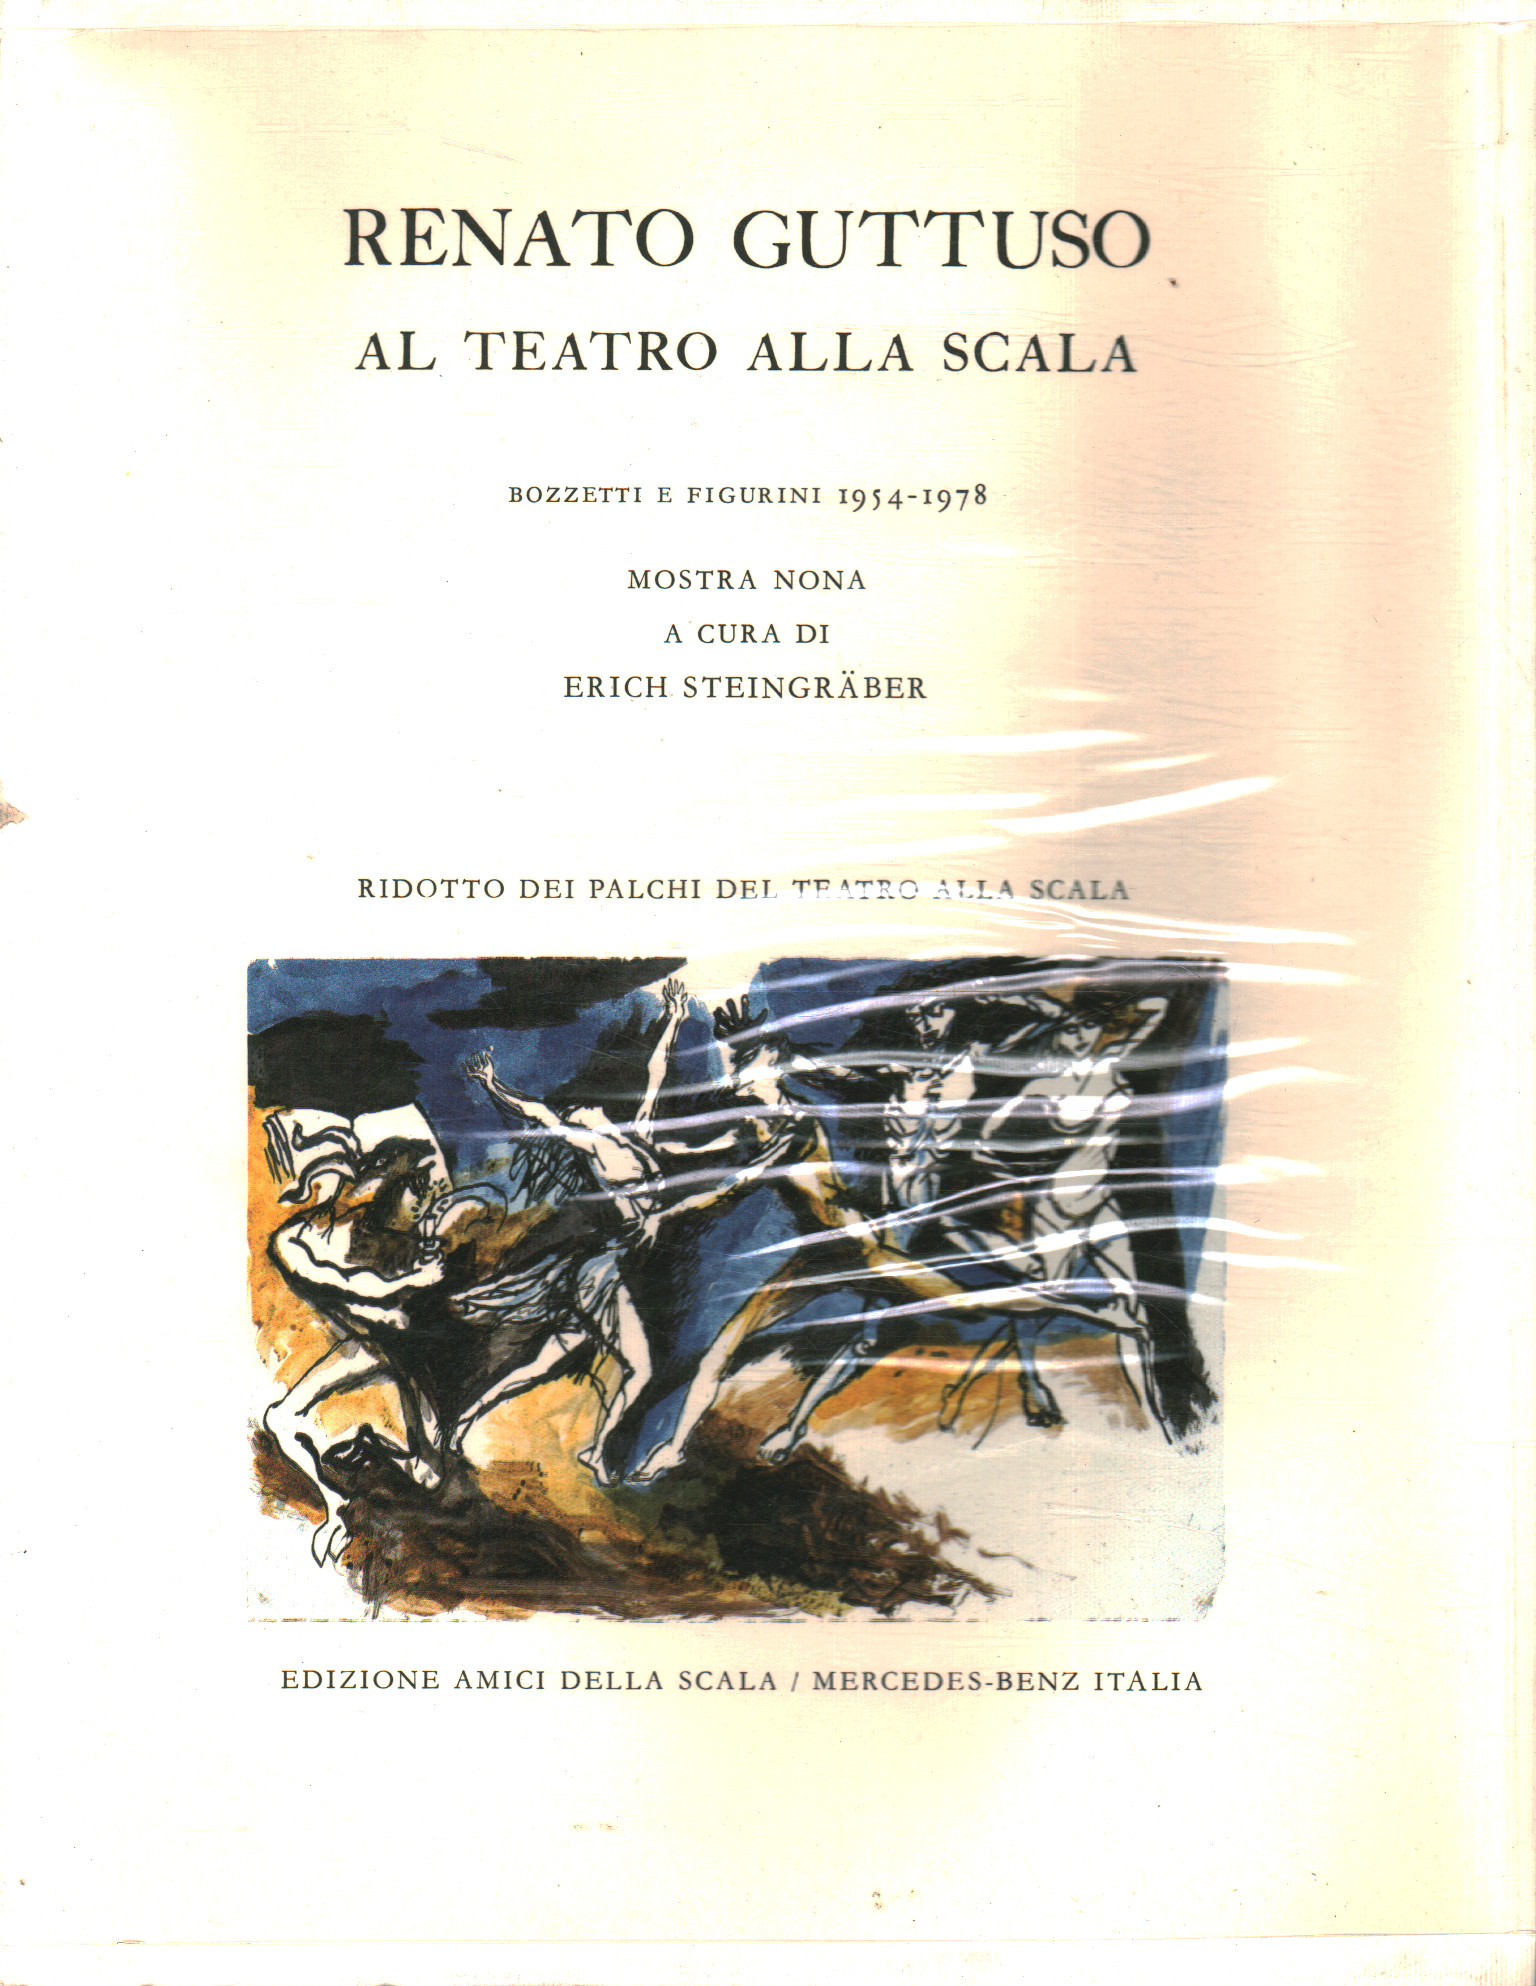 Renato Guttuso au Teatro alla Scala